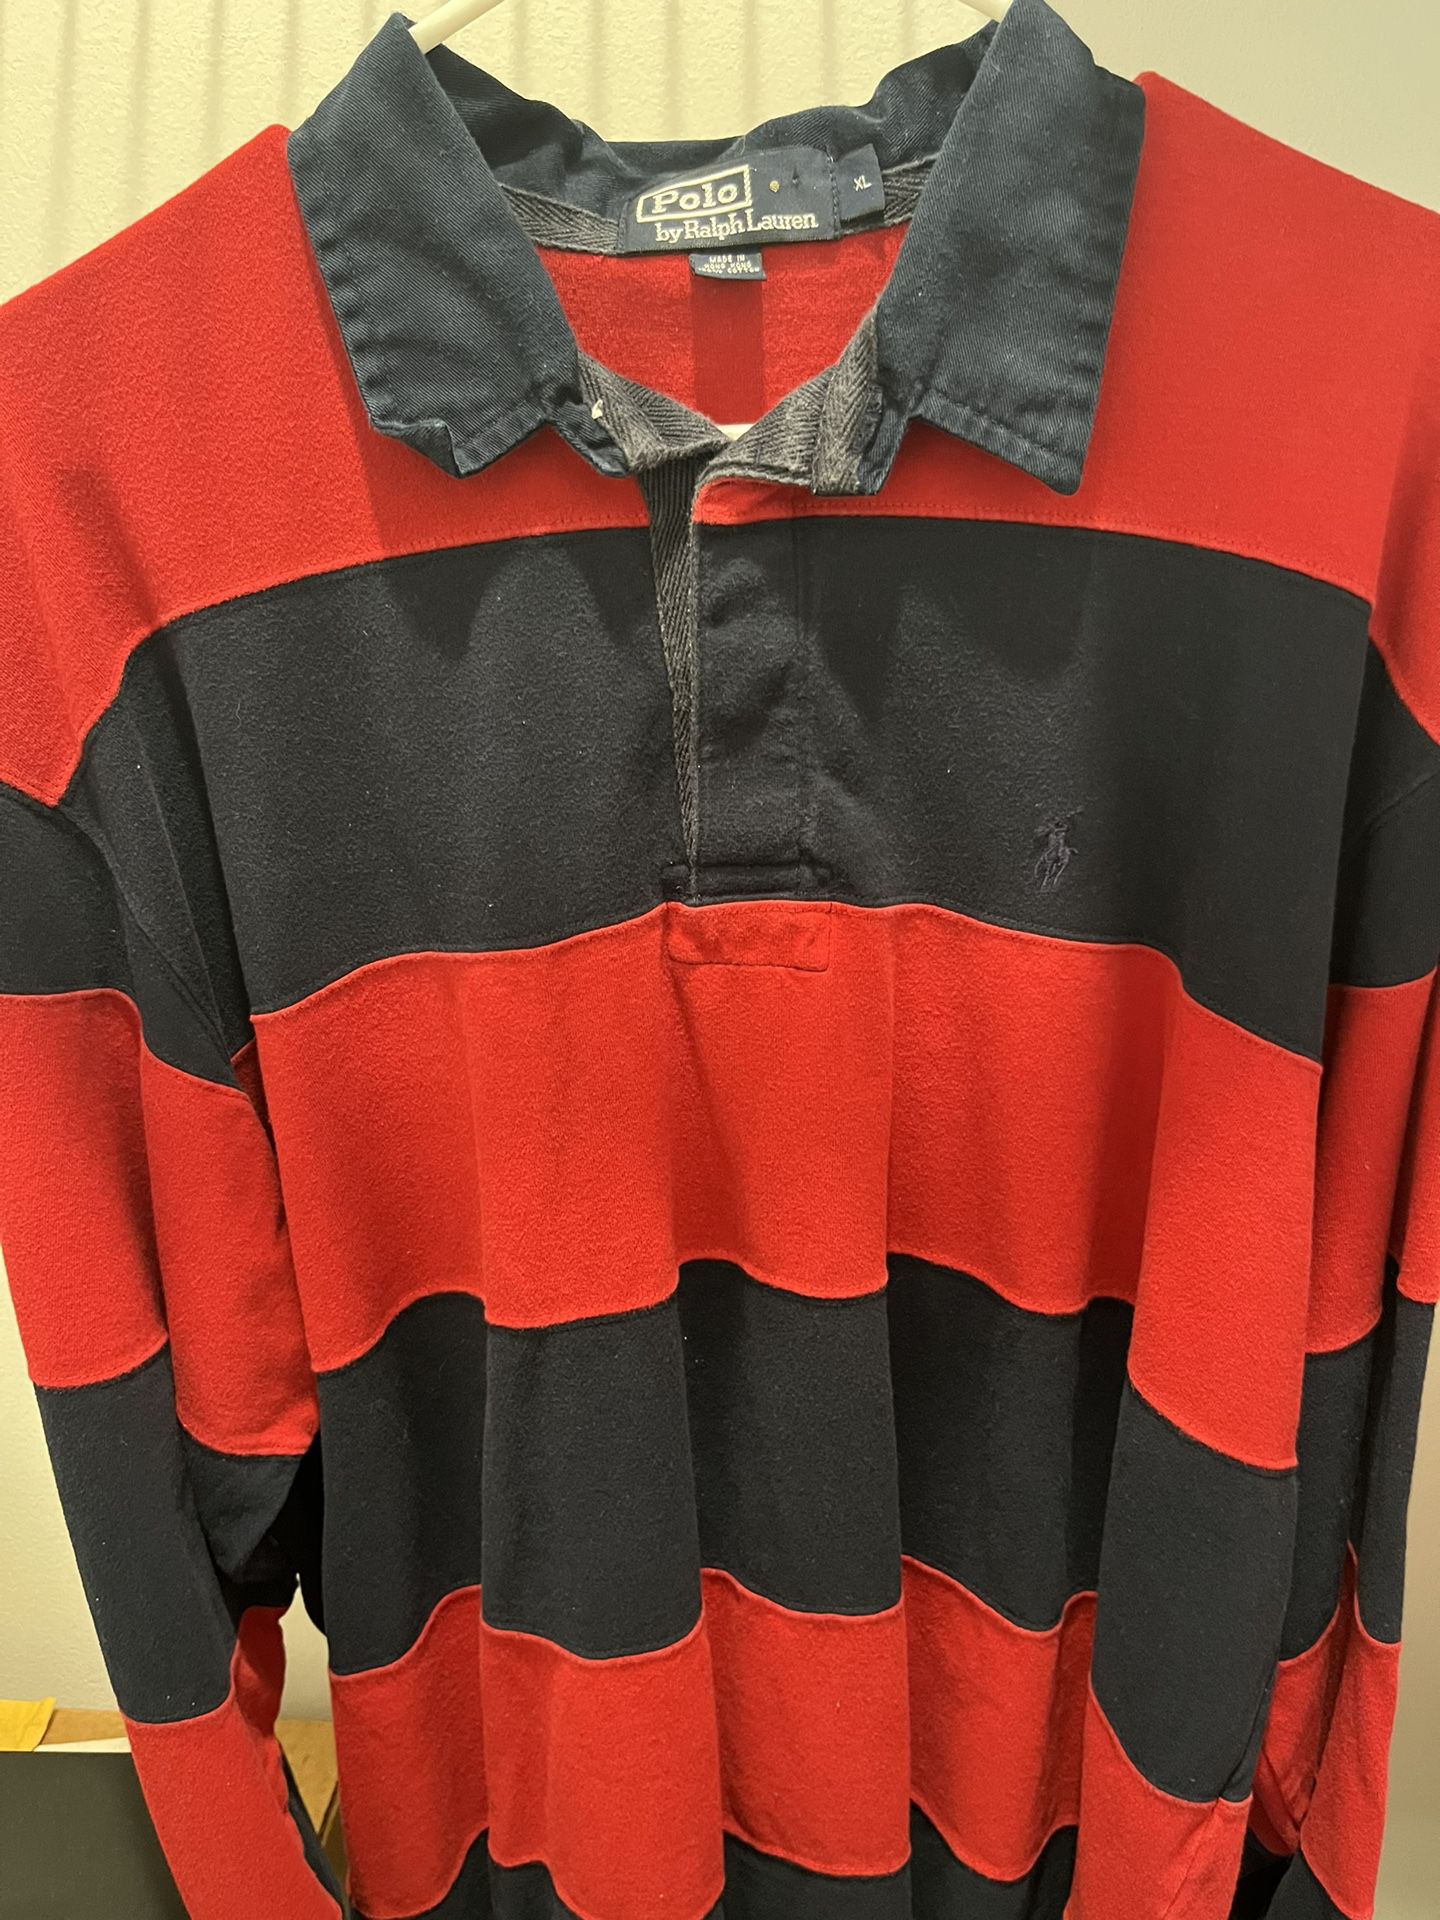 Red & Blue Polo Ralph Lauren Shirt $25 Long Sleeve